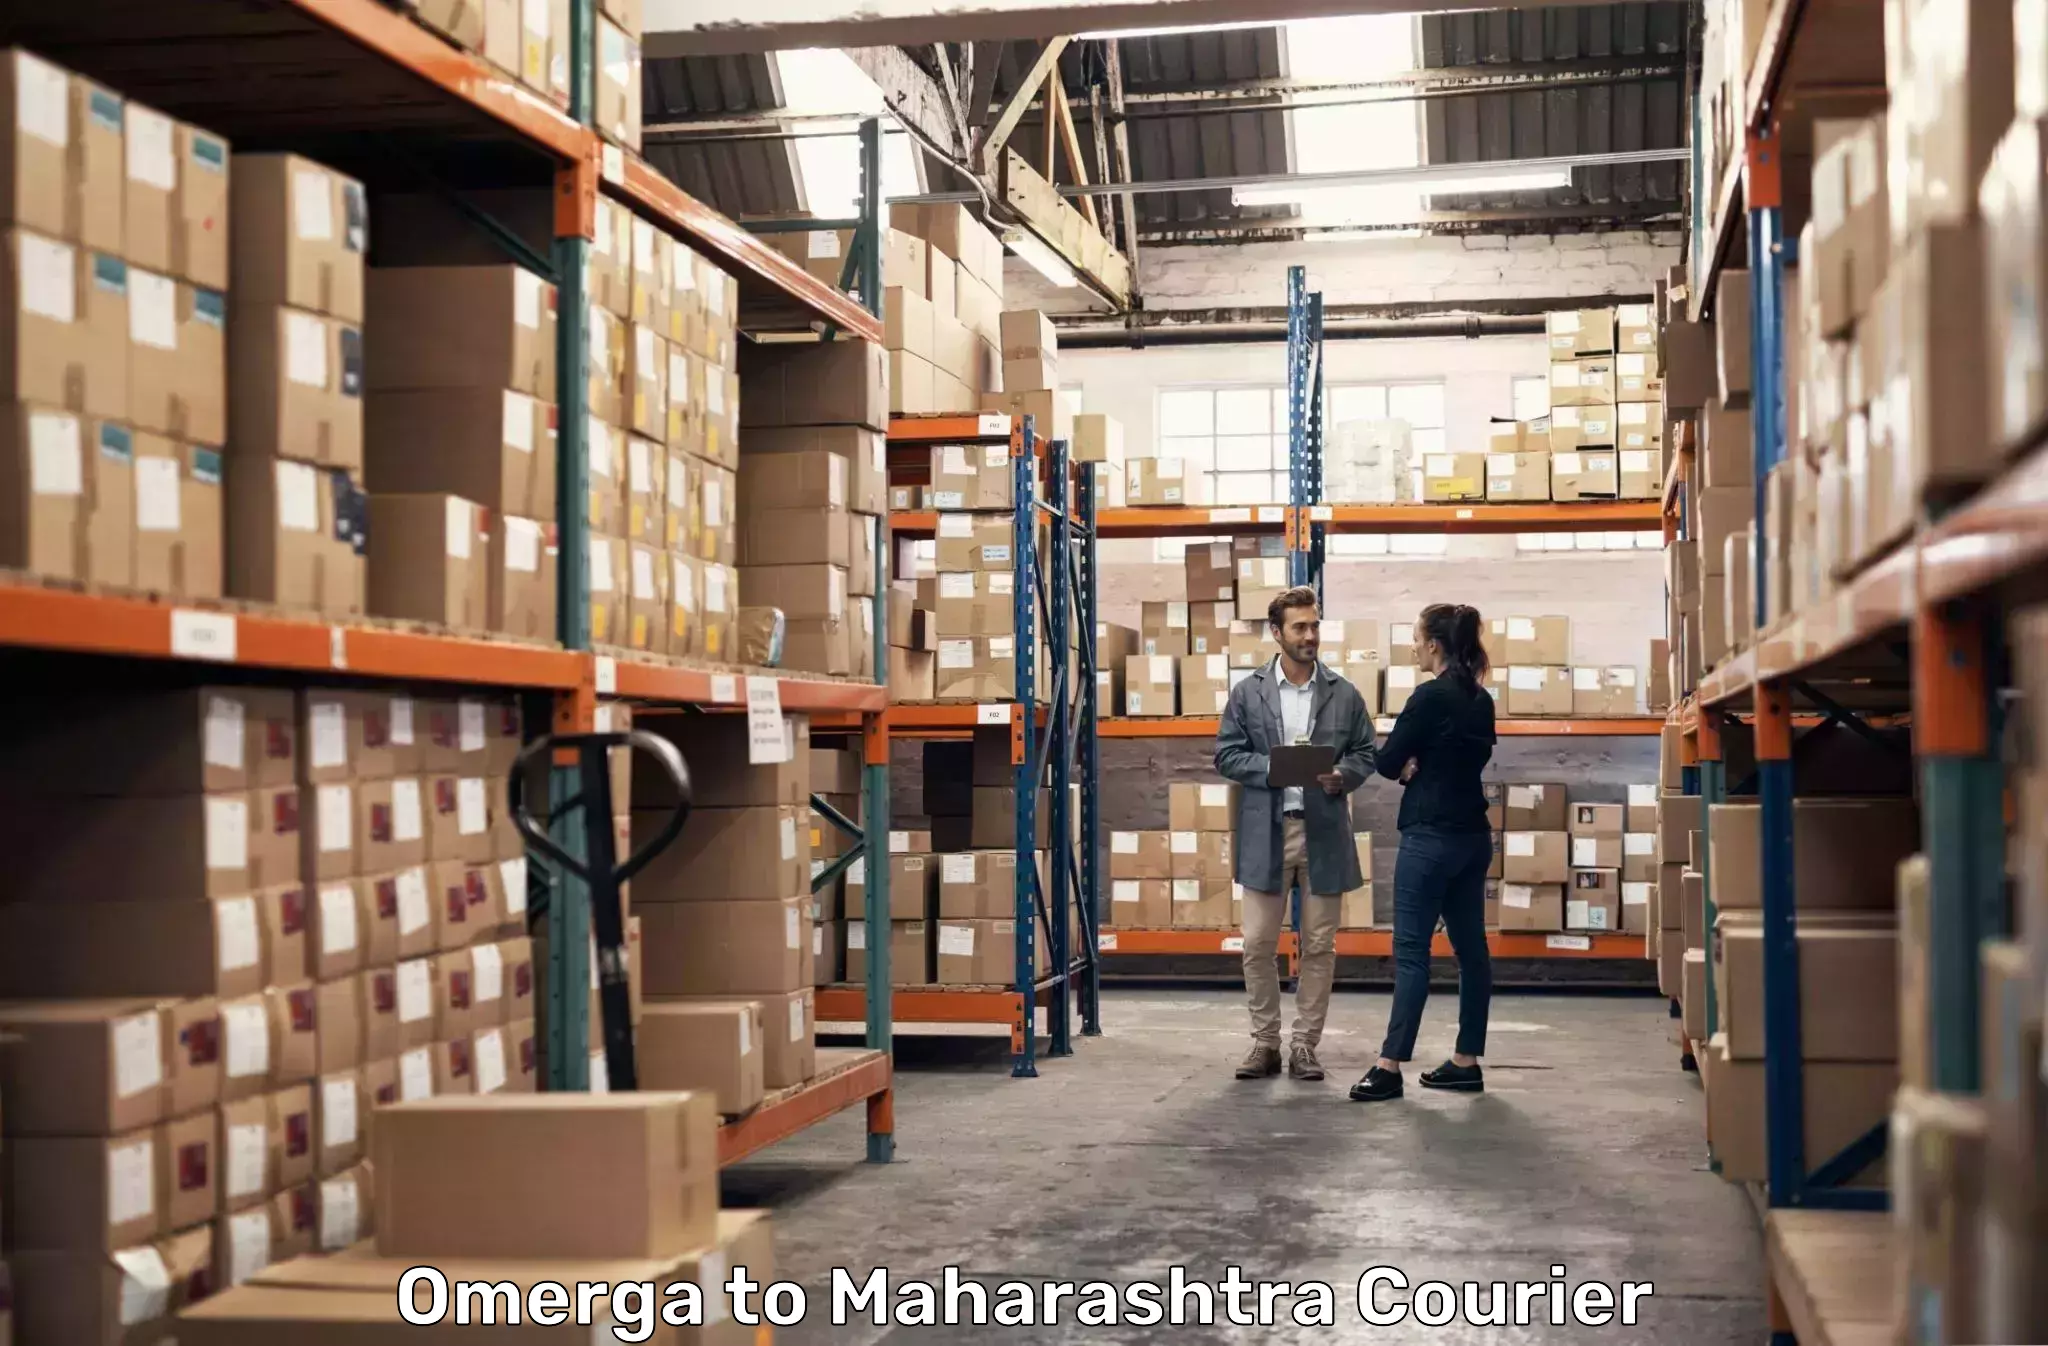 Courier service innovation Omerga to Maharashtra